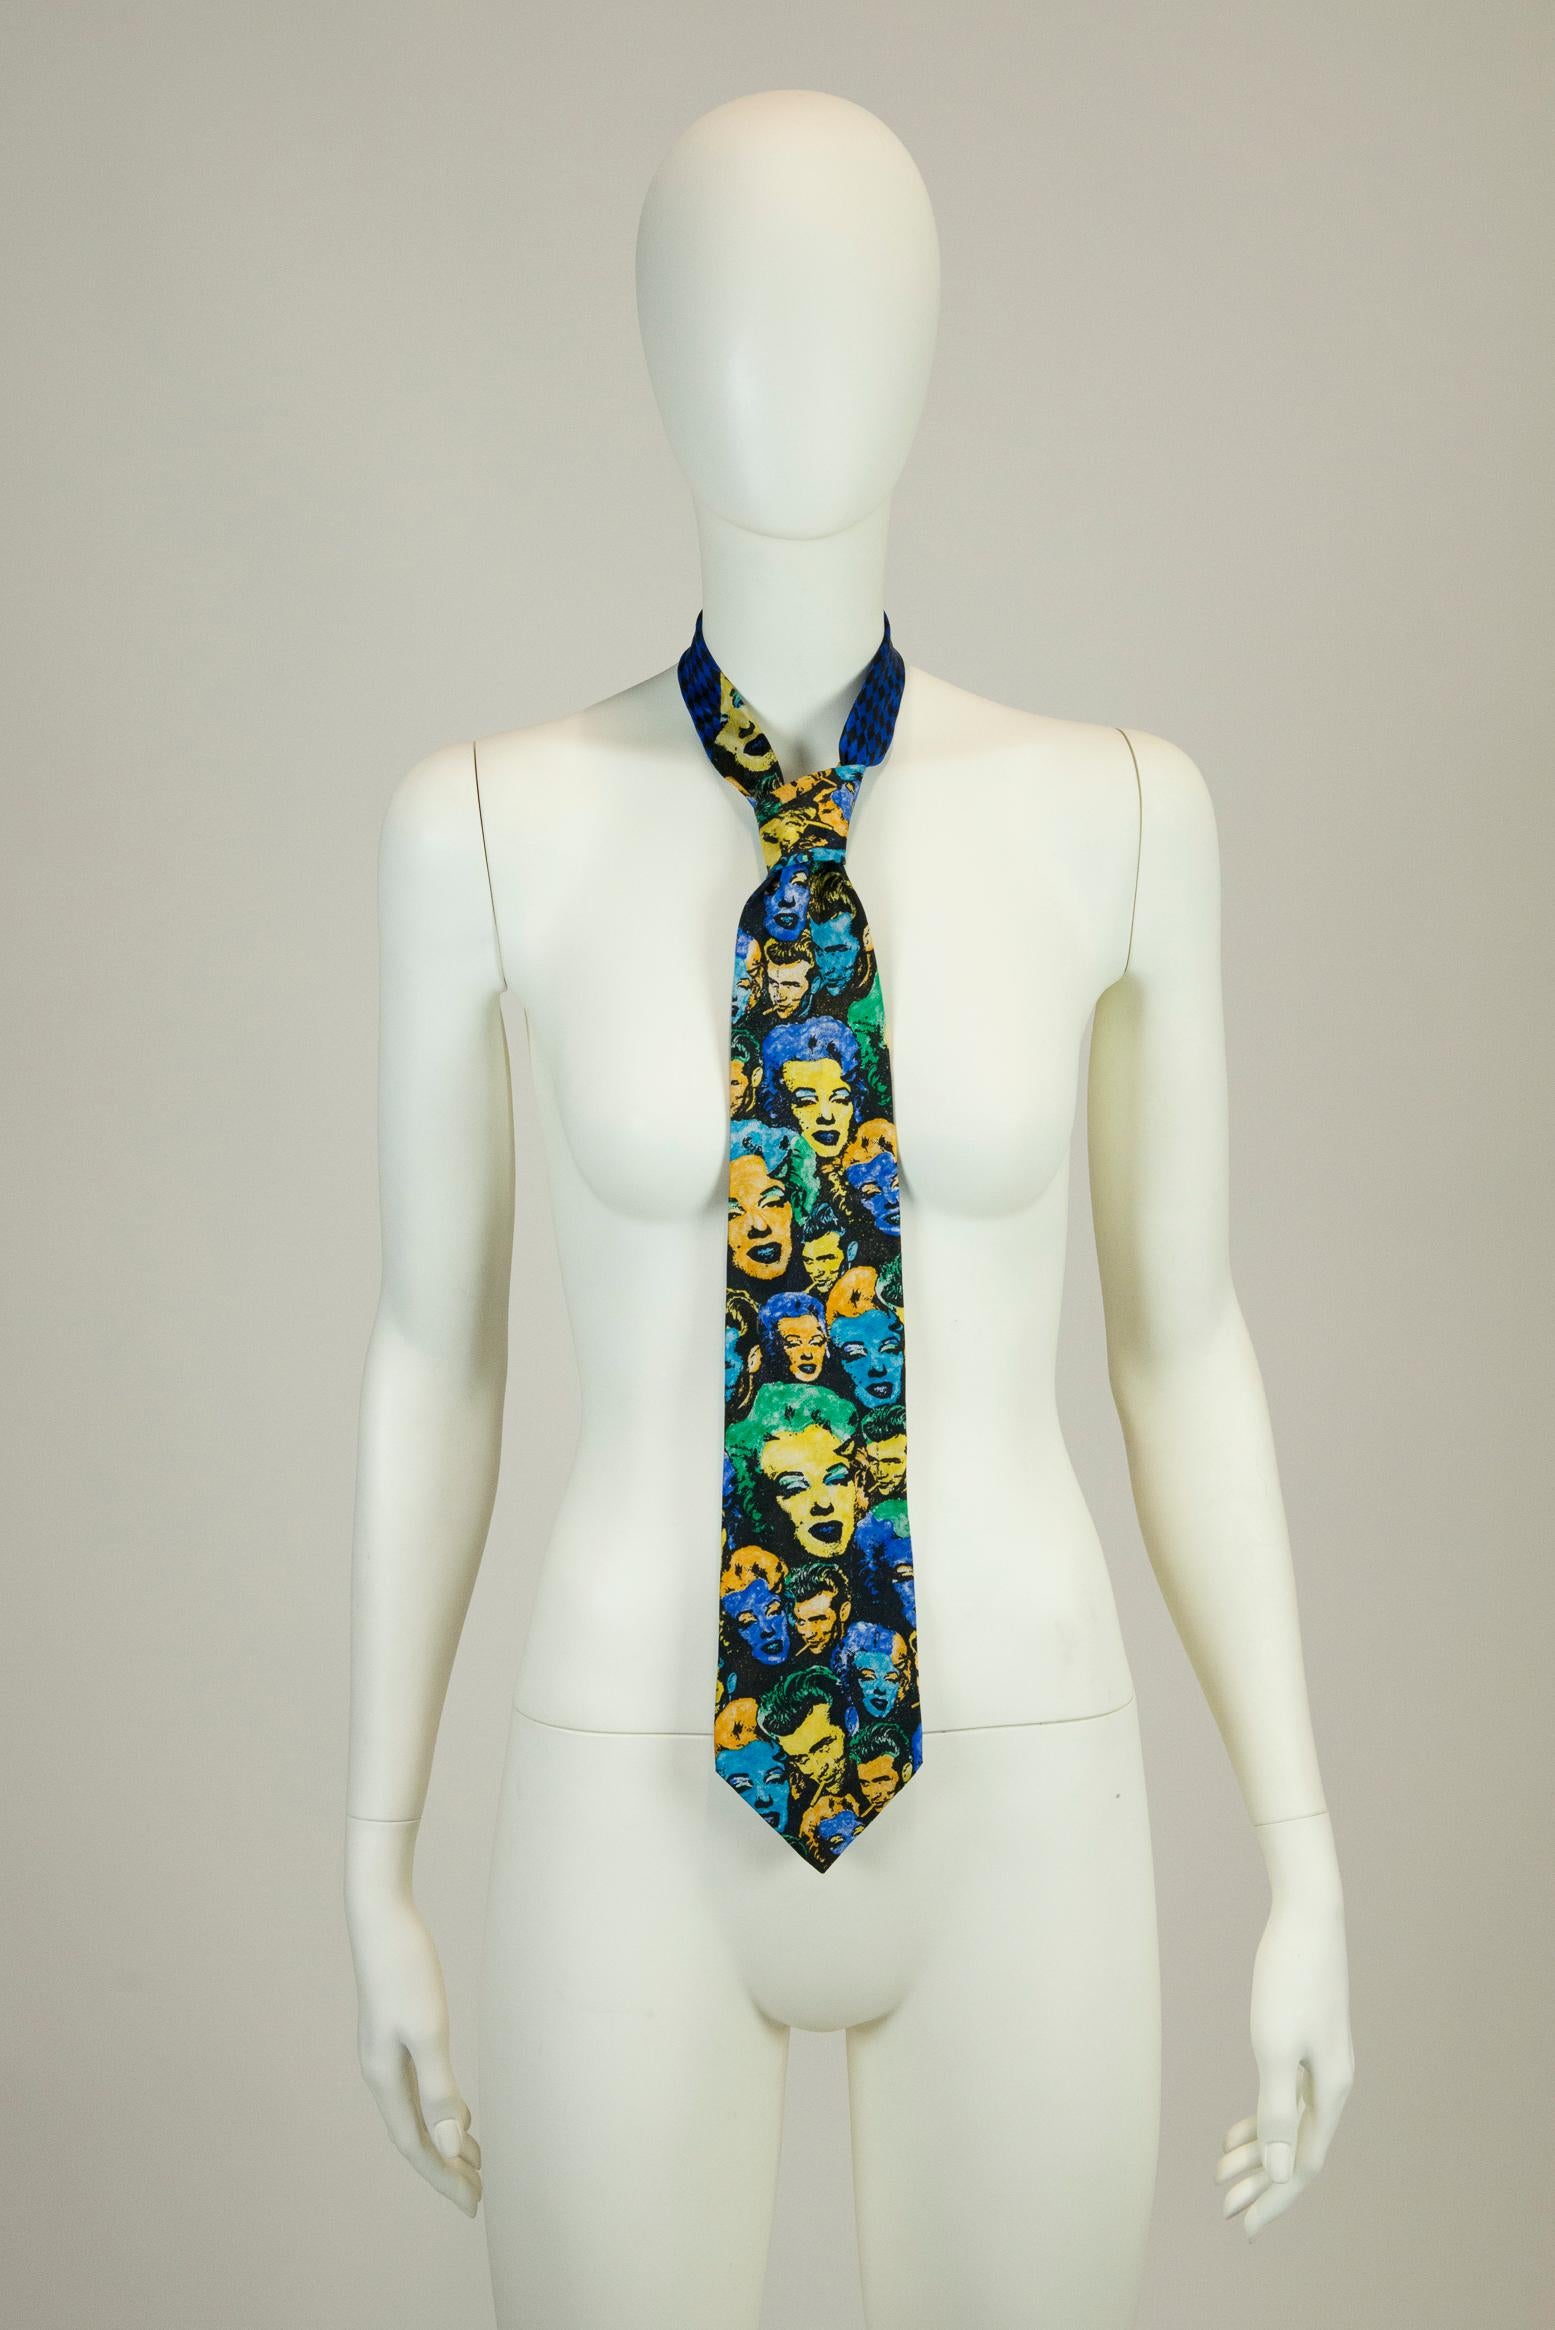 Cravate en soie imprimée Marilyn & James Dean de Gianni Versace Unisexe en vente